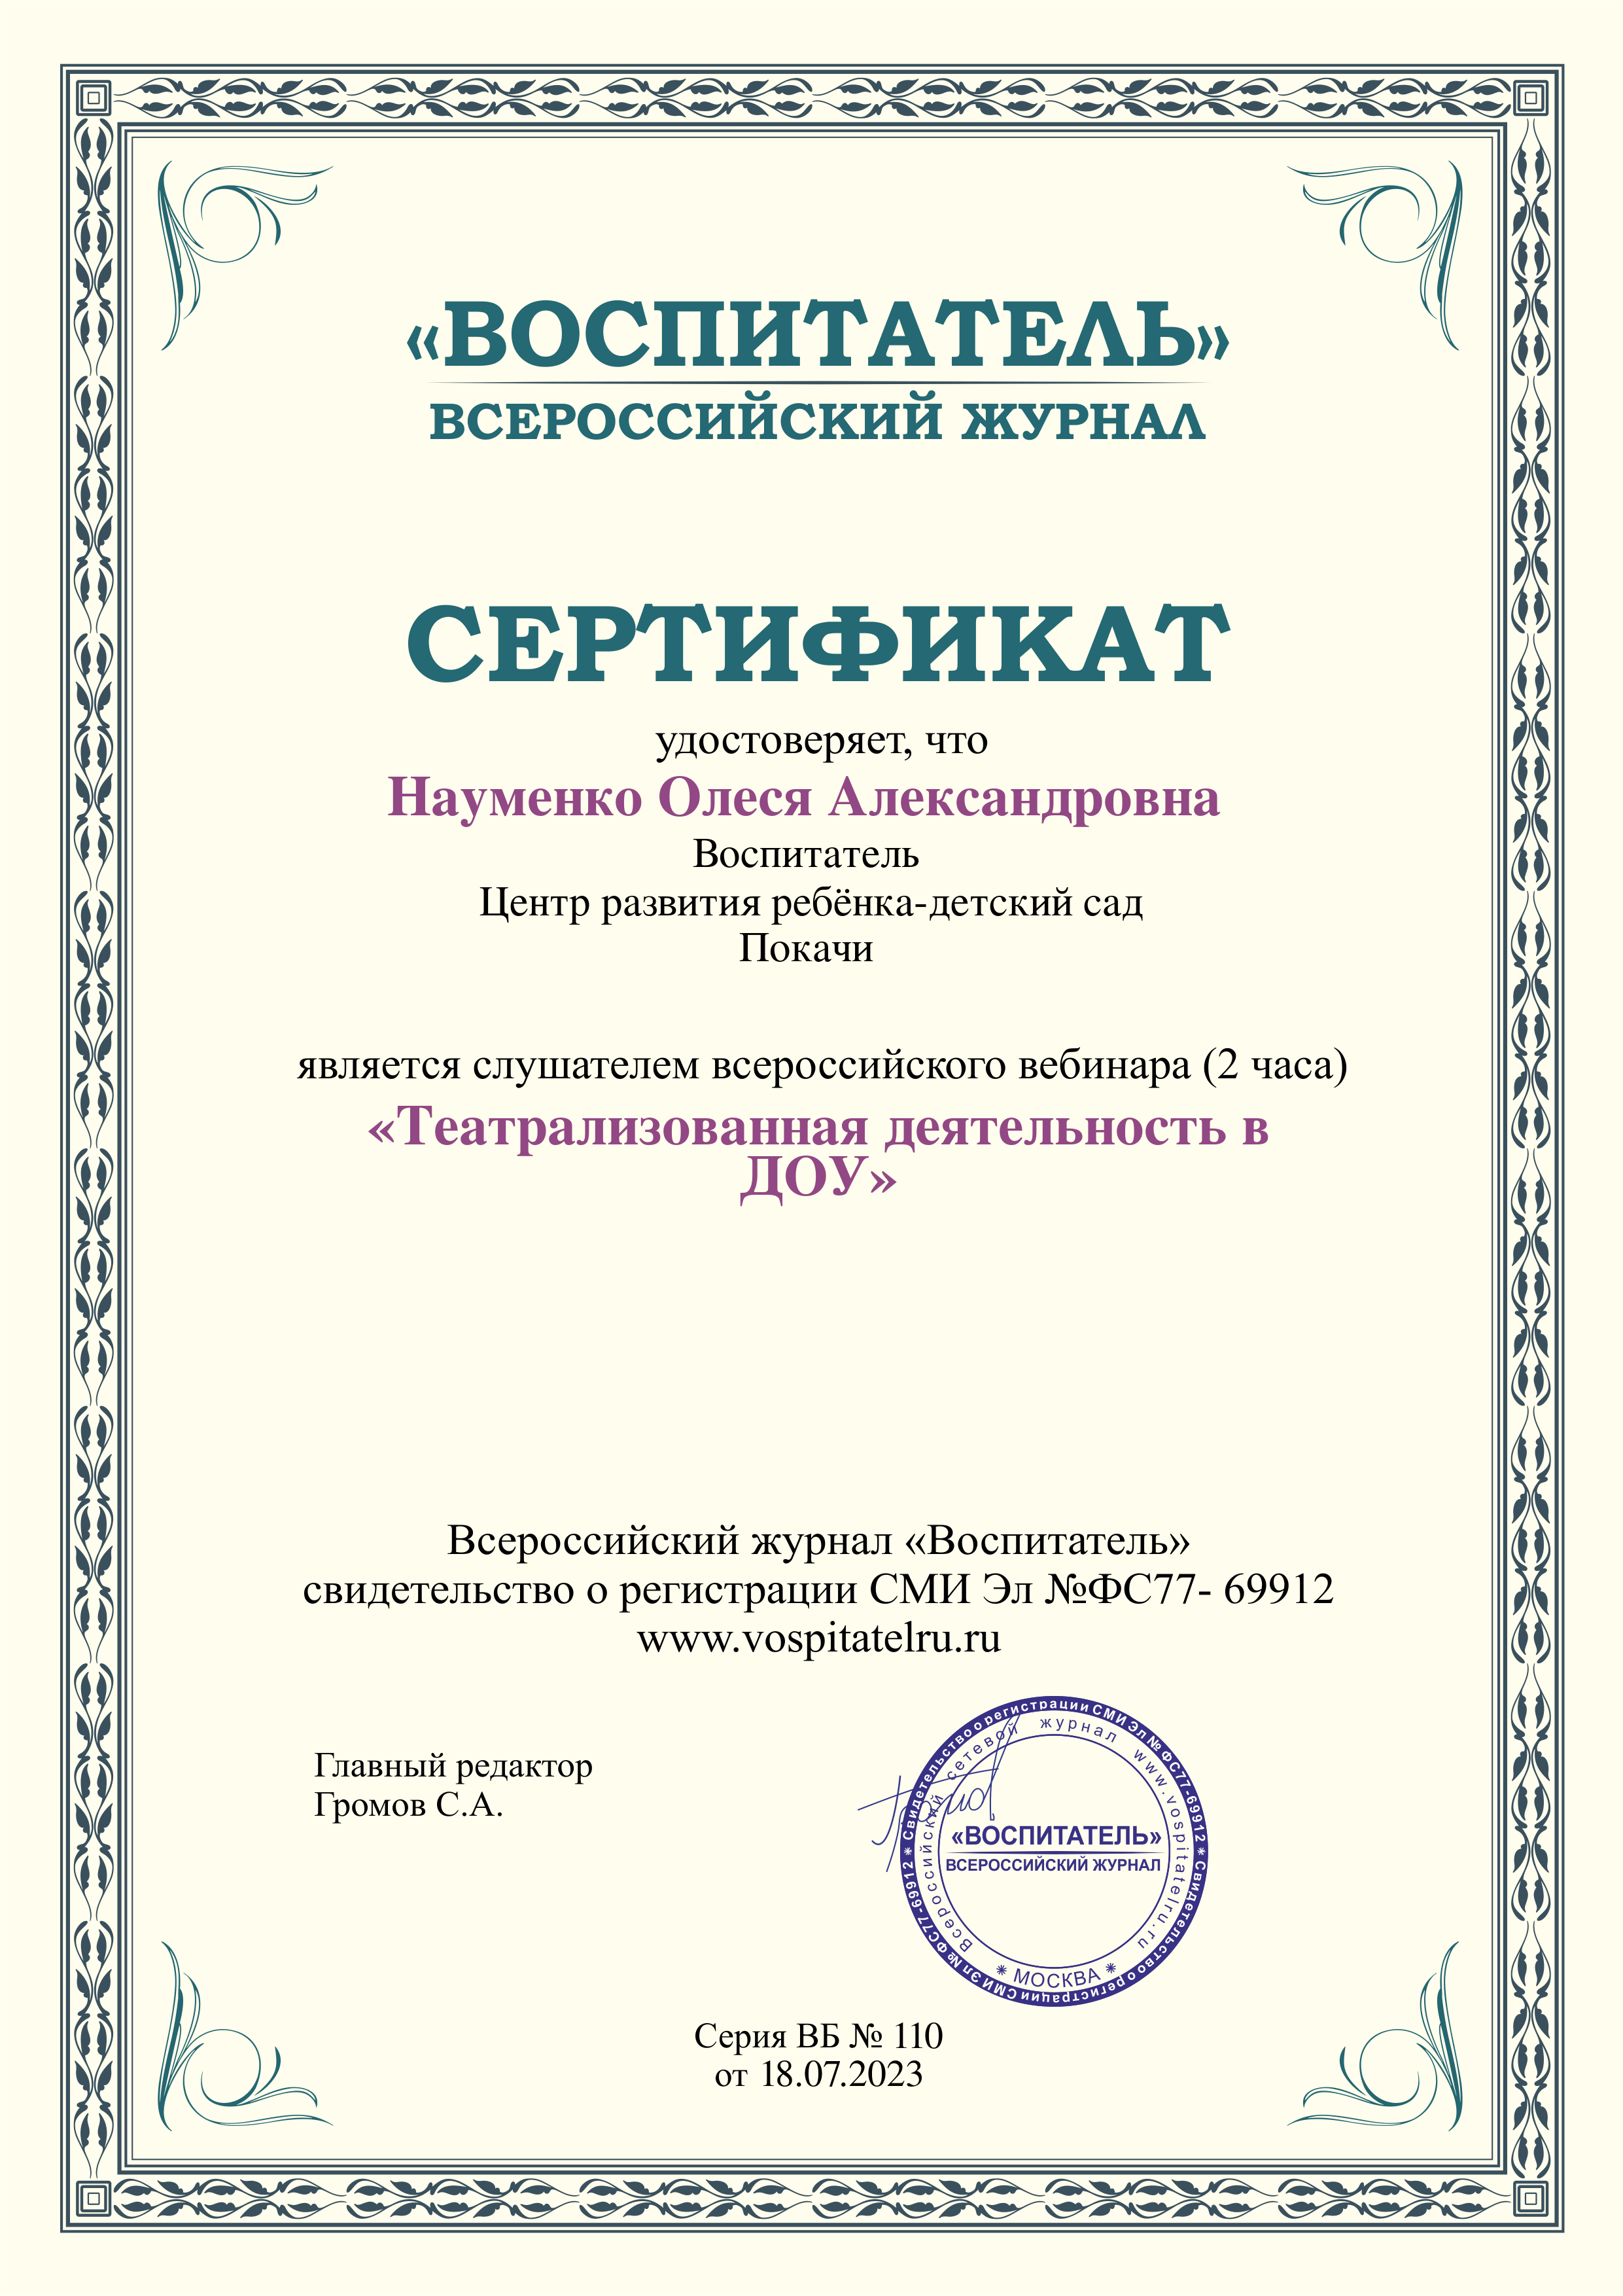 Сертификат. Вебинар. Театрализованная деятельность в ДОУ